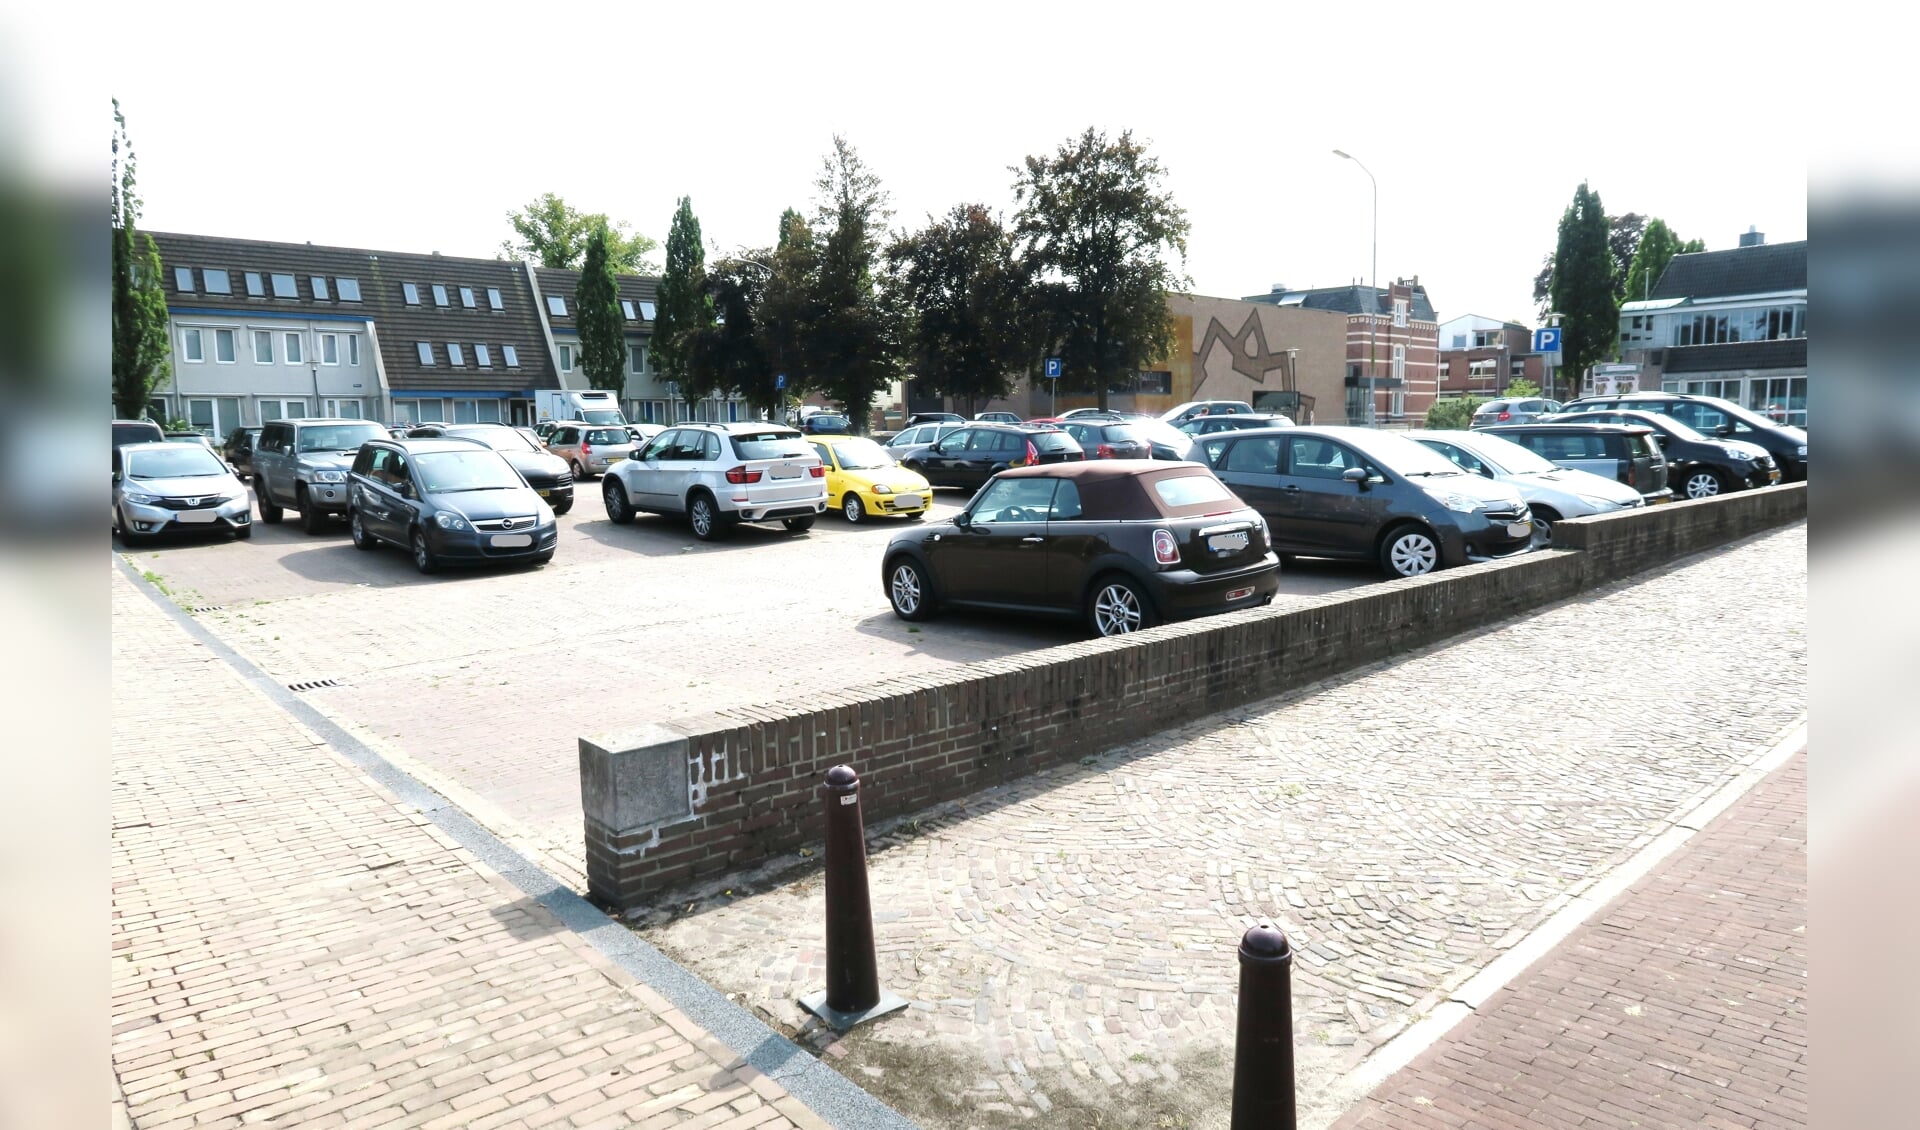 De parkeerplaats aan de Wheme in Groenlo. Foto: archief Achterhoek Nieuws